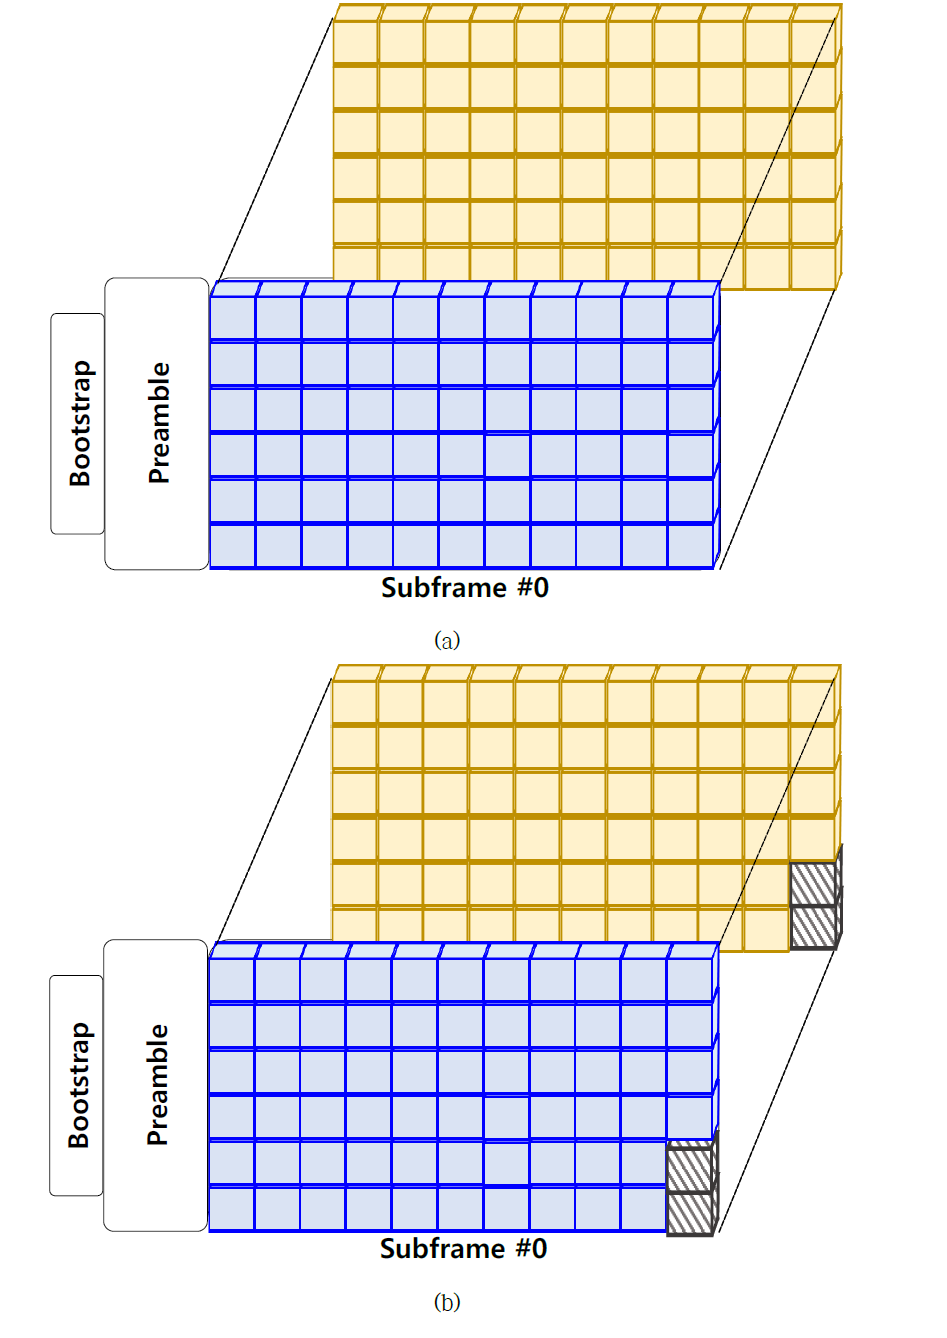 하나의 부프레임에 두 개의 PLP 할당 및 LDM을 사용하는 경우의 셀 다중화 (a) CTI 모드 혹은 시간 인터리버를 사용하지 않는 경우 (b) HTI 모드를 사용하는 경우